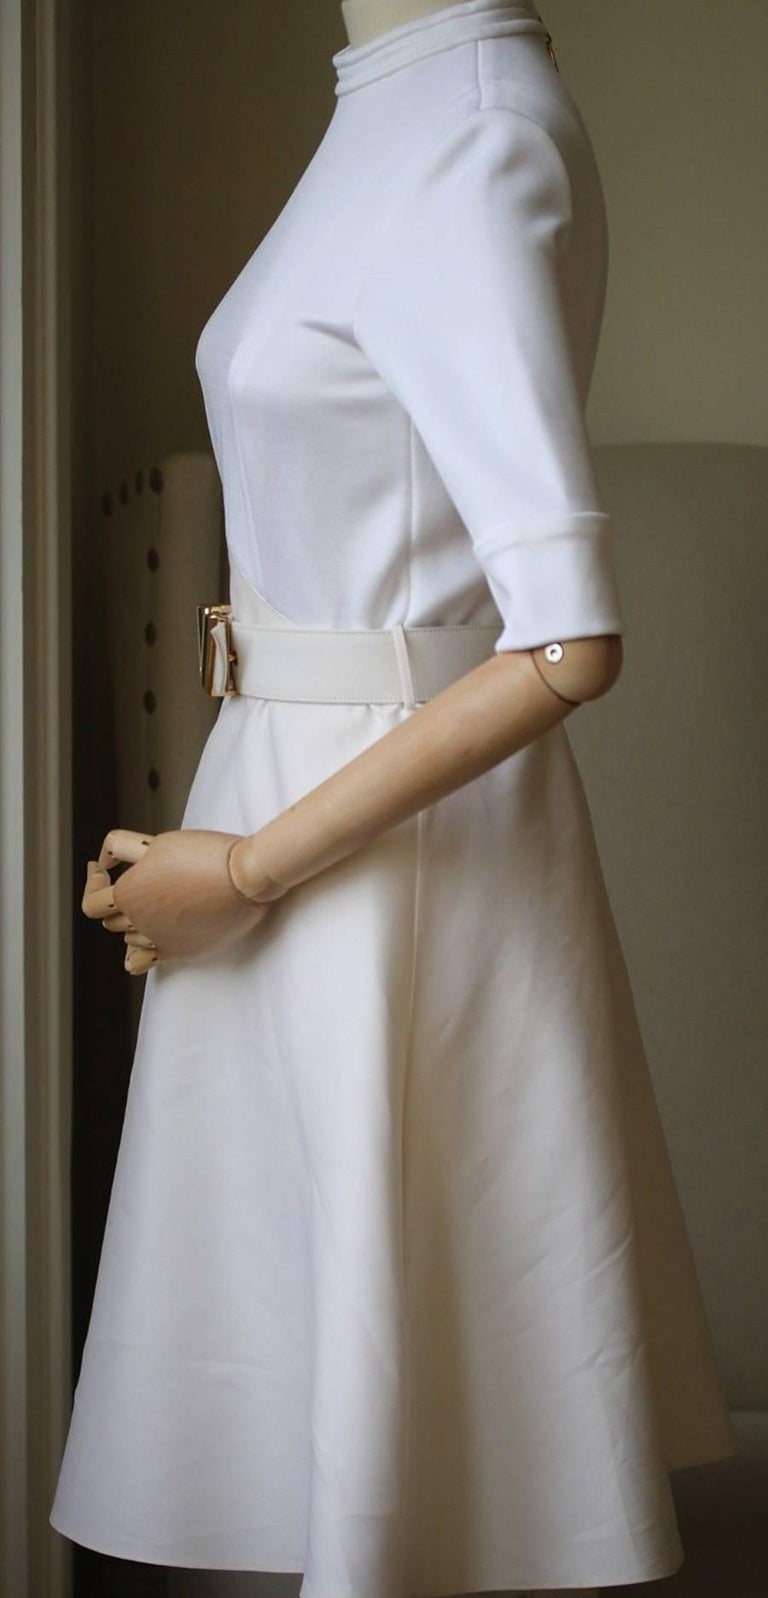 1 white dress blazer brown valentino belt louis vuitton croissant